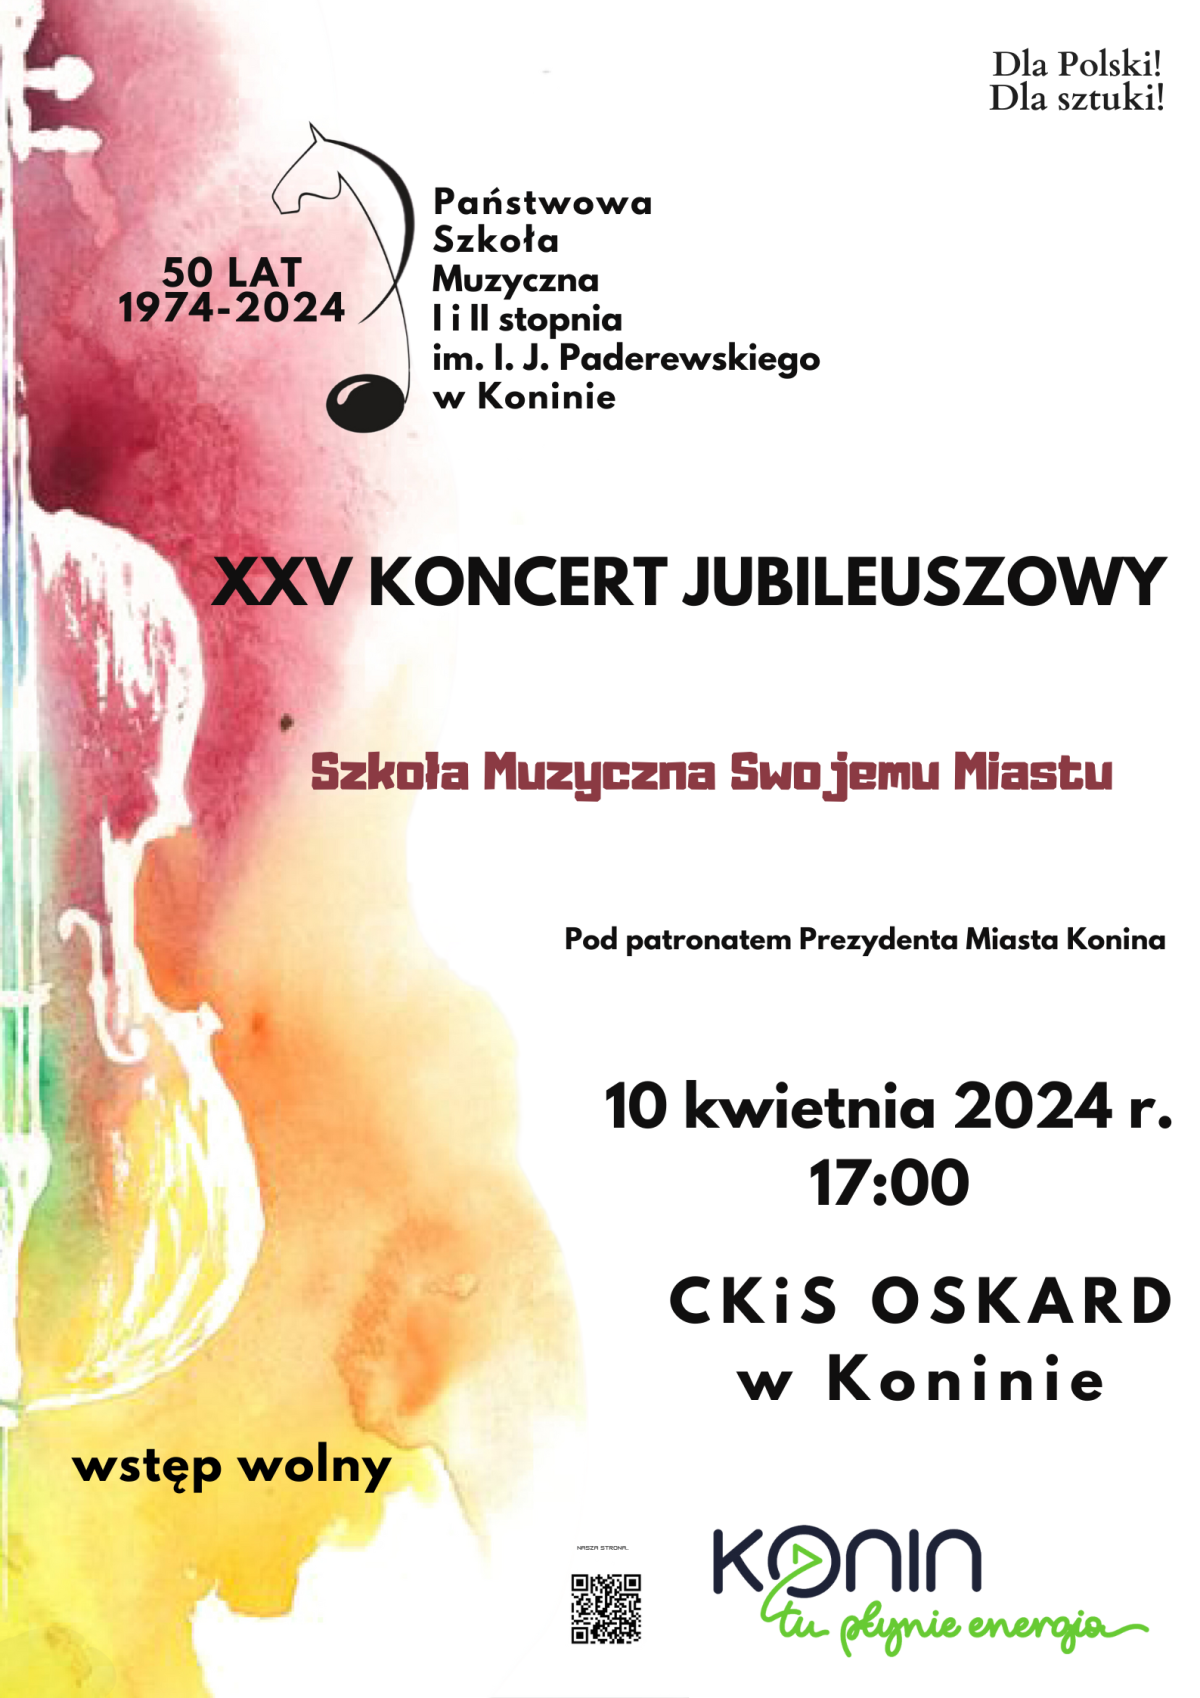 XXV Koncert Jubileuszowy Szkoła Muzyczna Swojemu Miastu